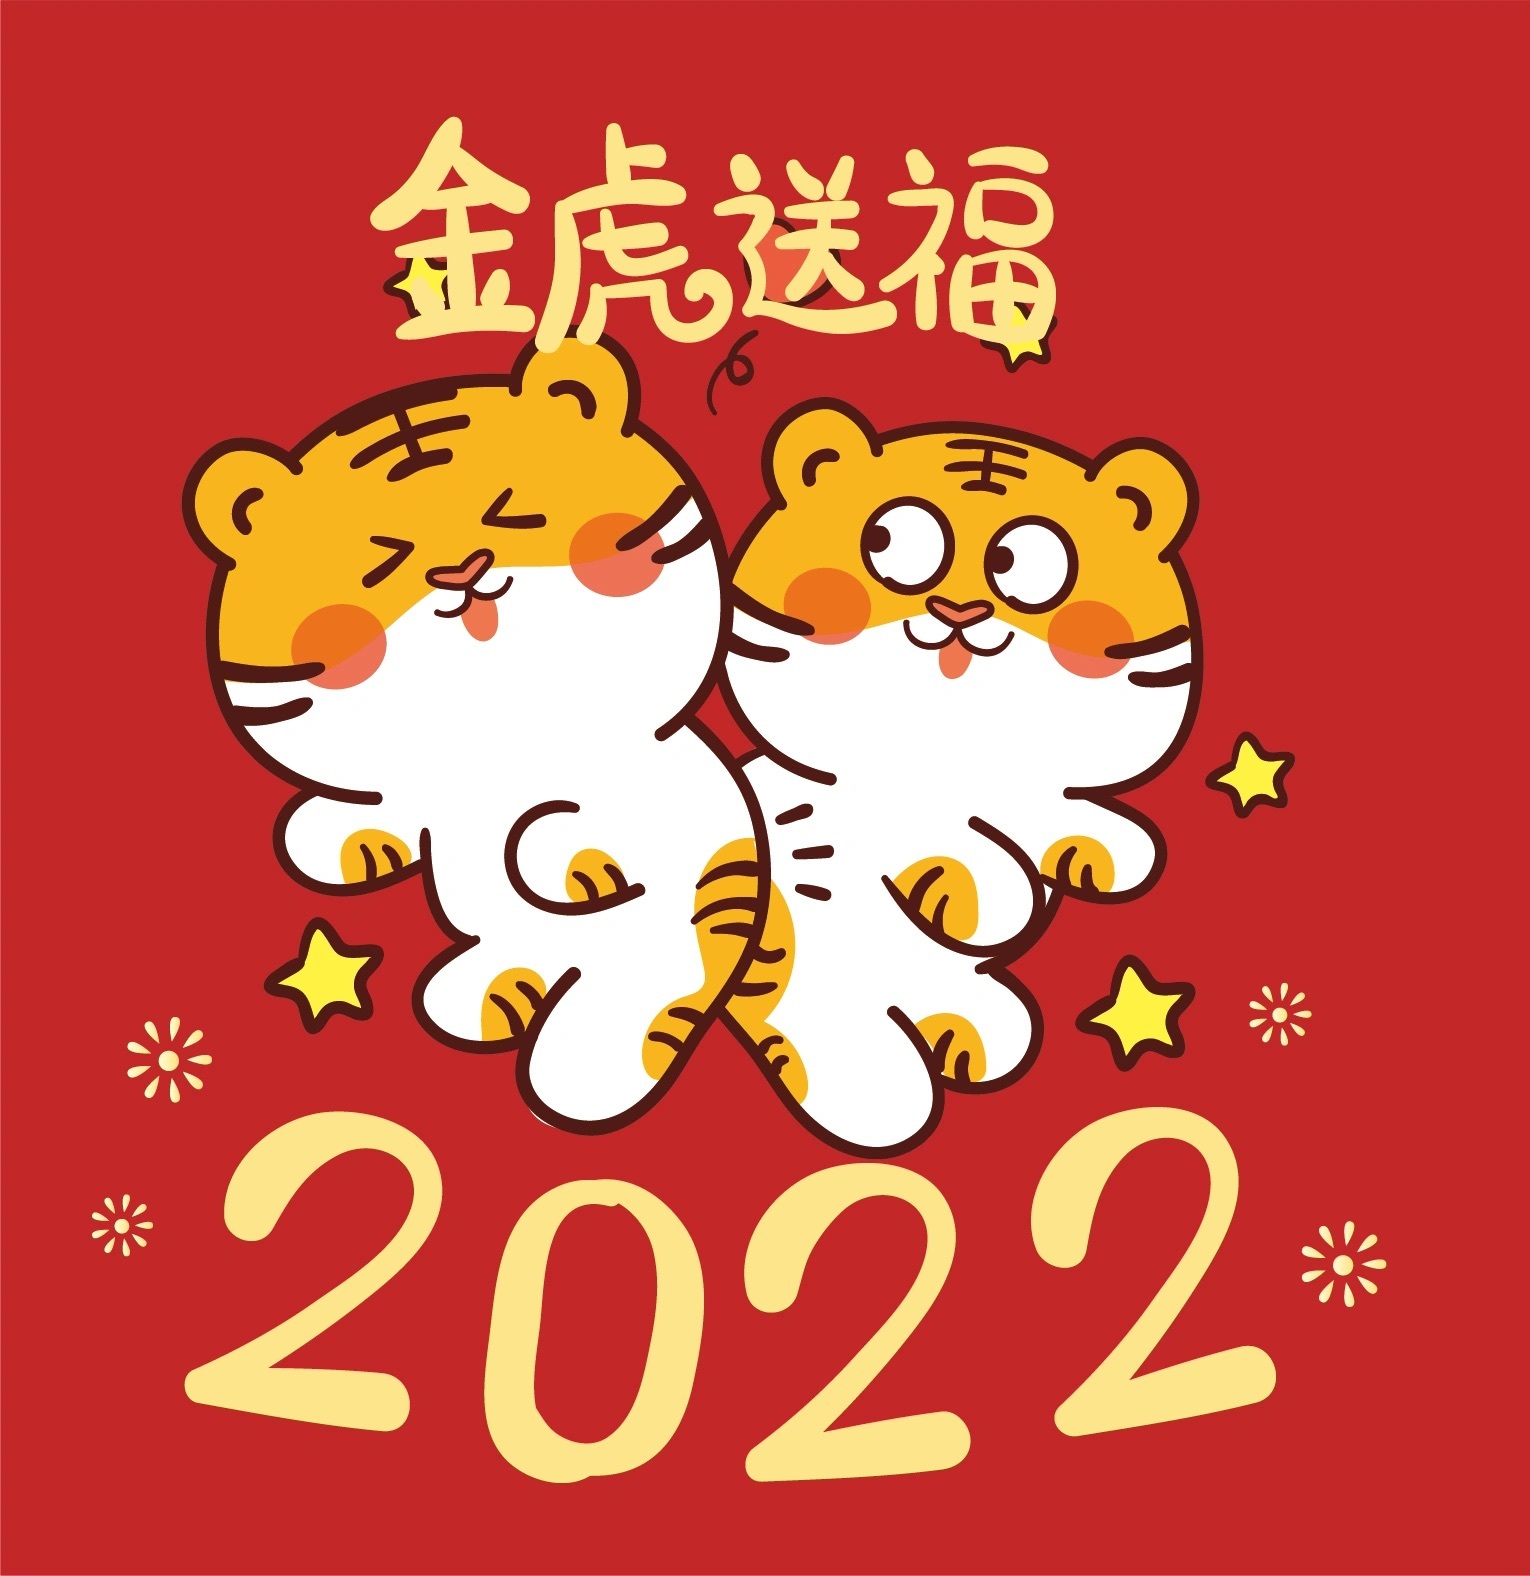 2022年当然是虎年了